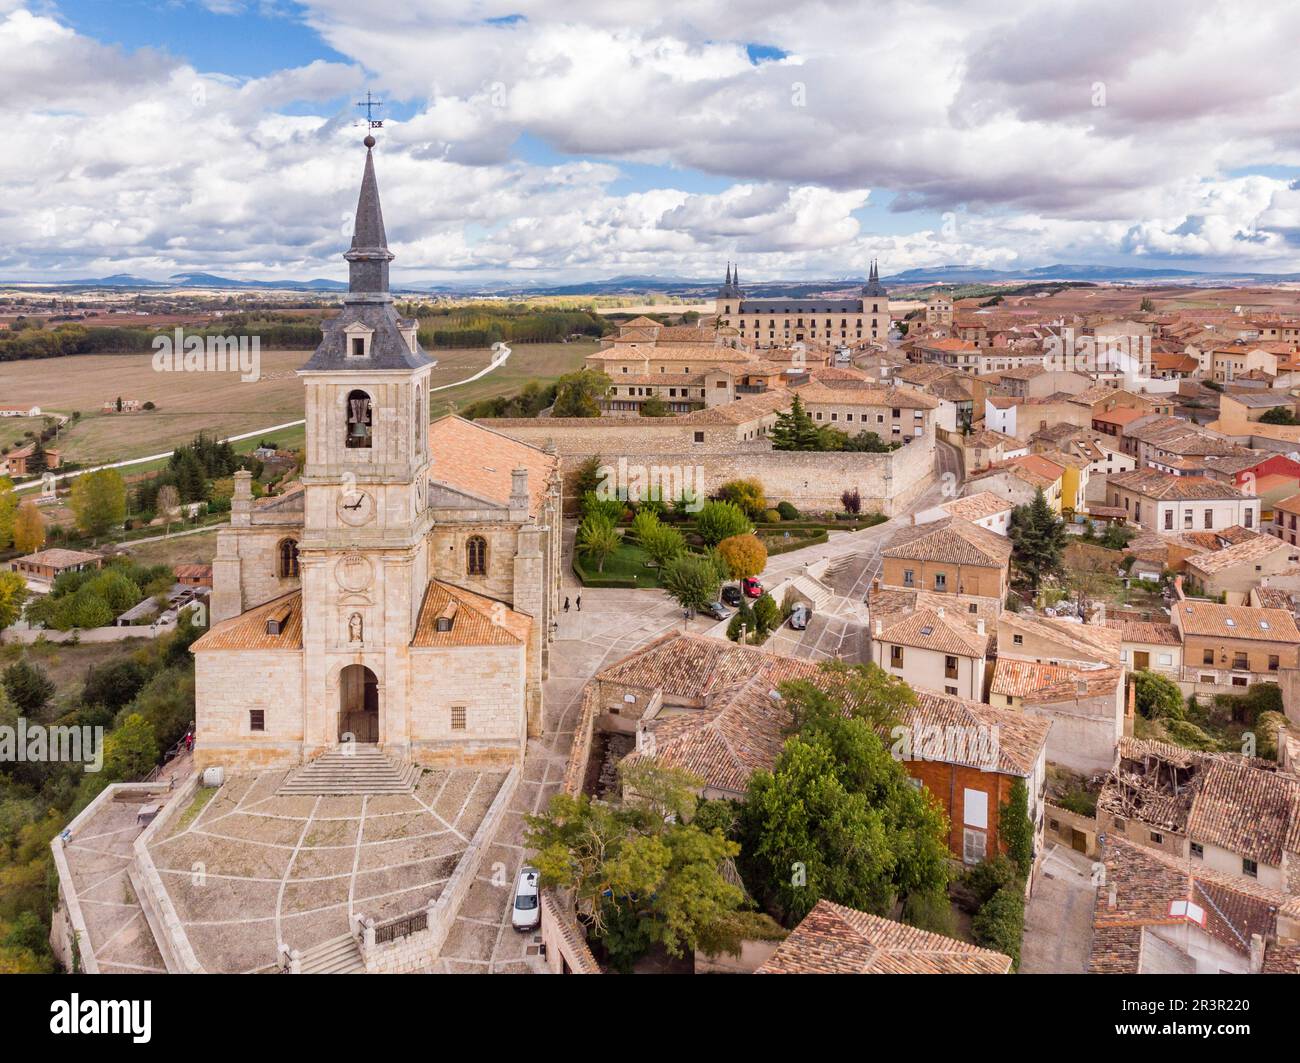 Colegiata de san Pedro, Lerma, Burgos province, Spain. Stock Photo